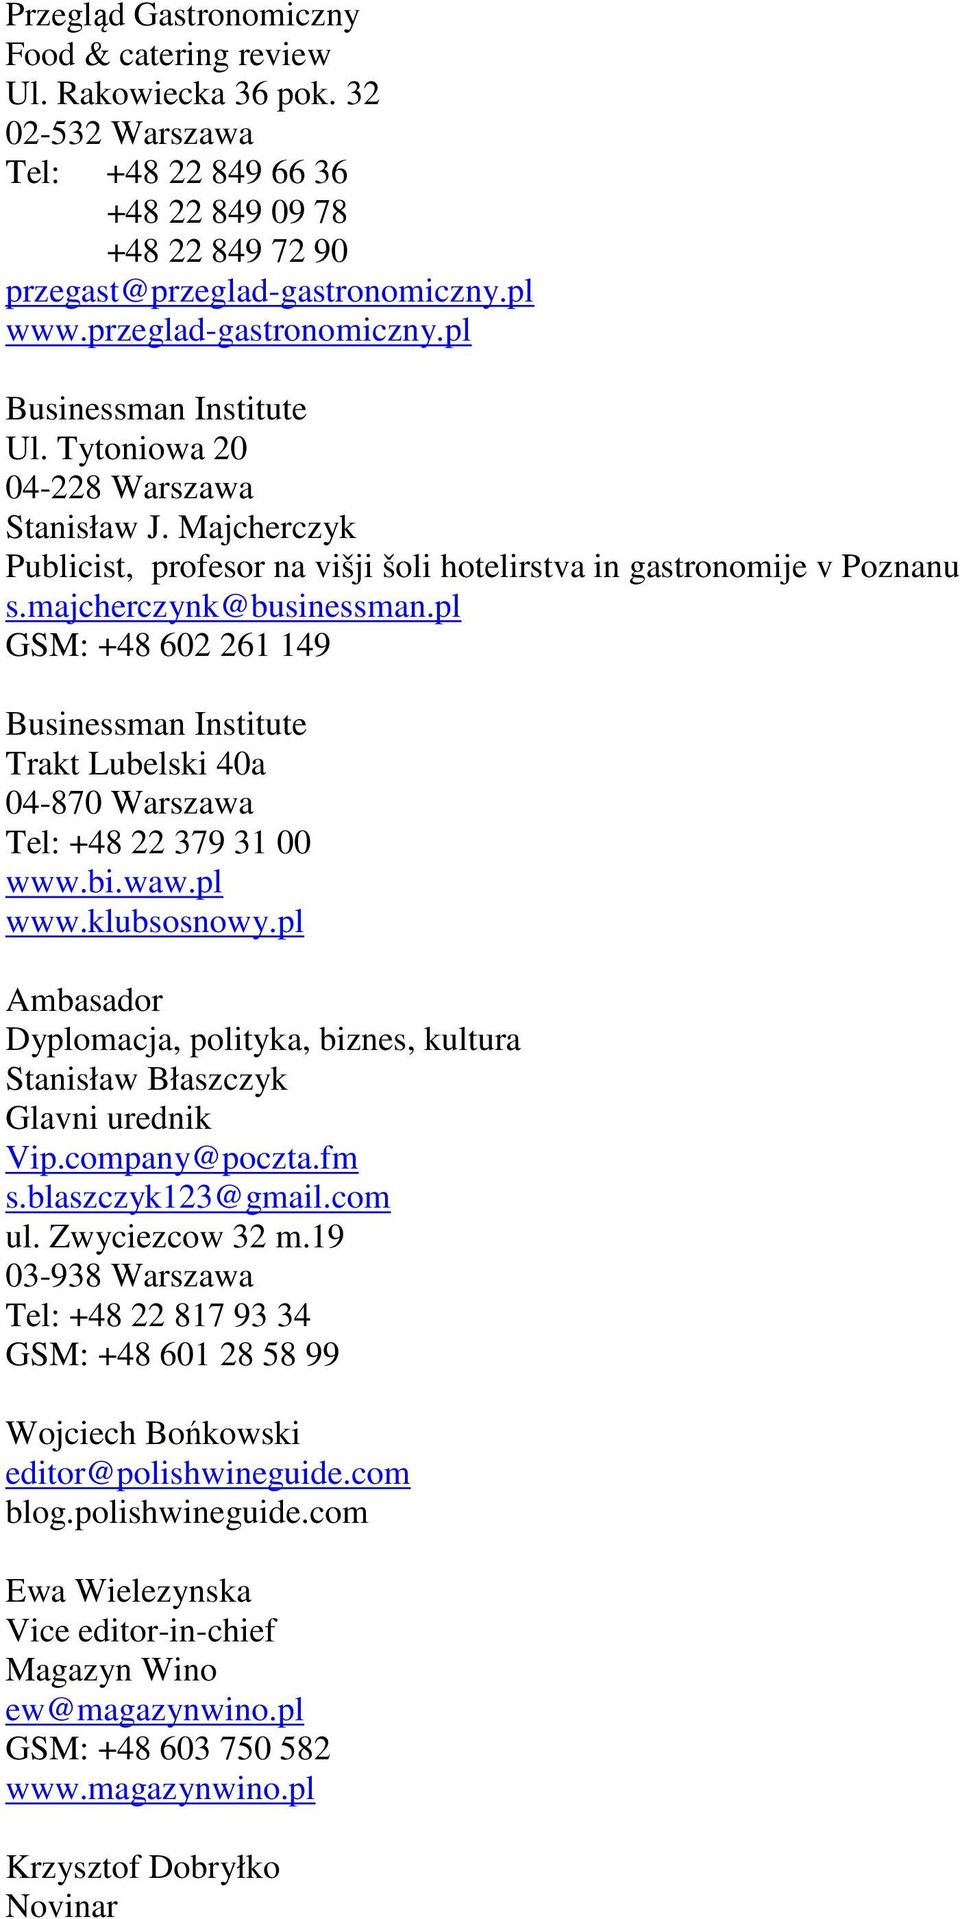 majcherczynk@businessman.pl GSM: +48 602 261 149 Businessman Institute Trakt Lubelski 40a 04-870 Warszawa Tel: +48 22 379 31 00 www.bi.waw.pl www.klubsosnowy.